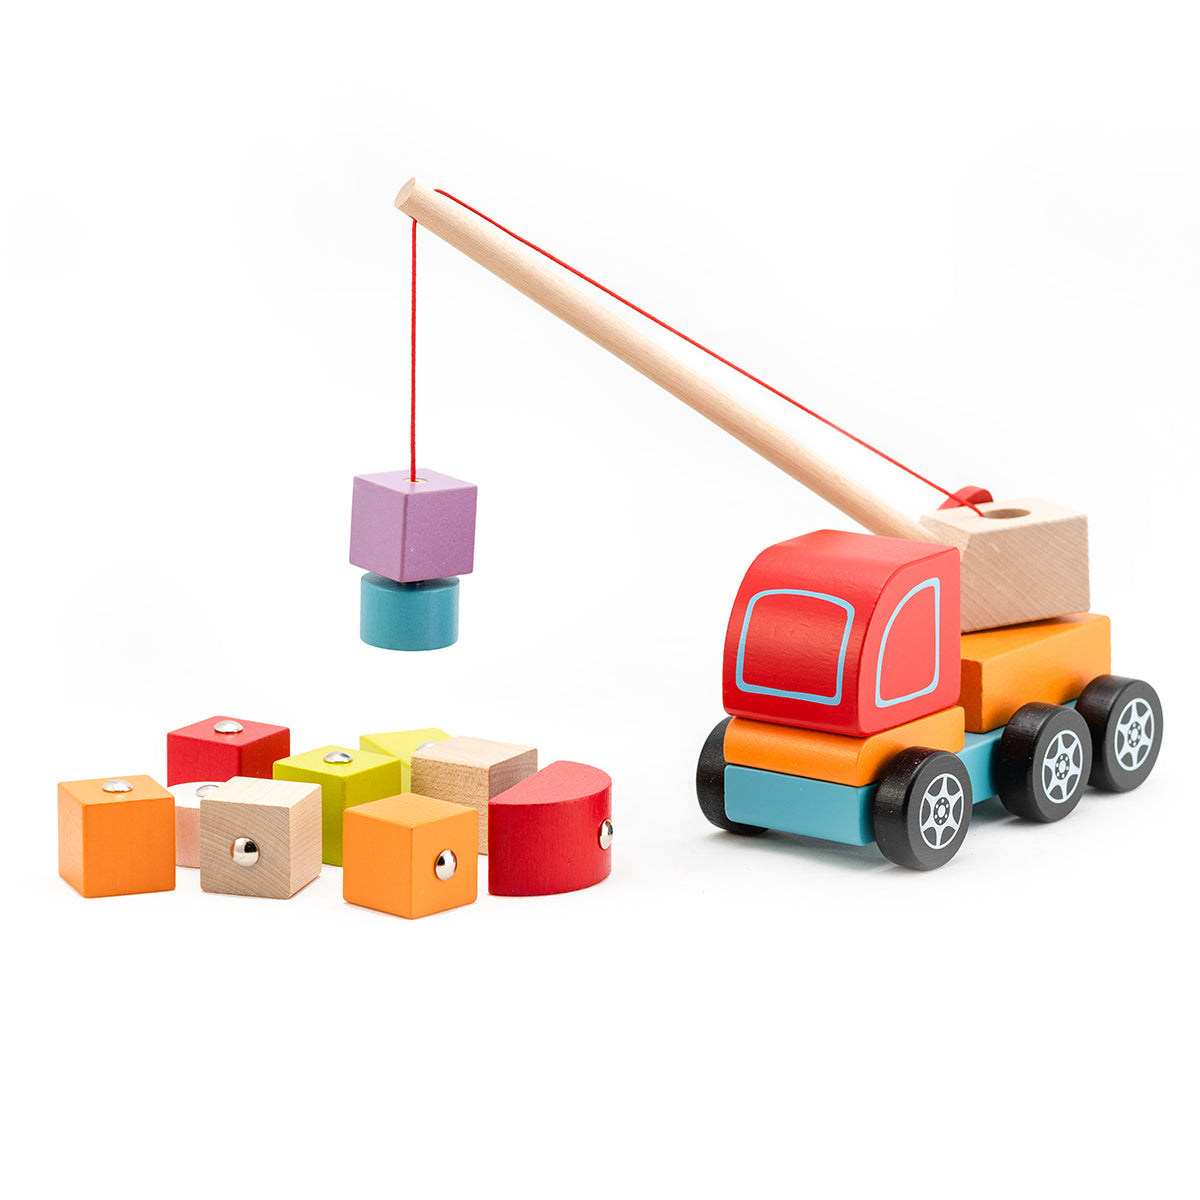 Spielzeug Kranwagen Kinderspielzeug Kran Bausteine Magnet Kran Holzspielzeug - Spielzeug Opa